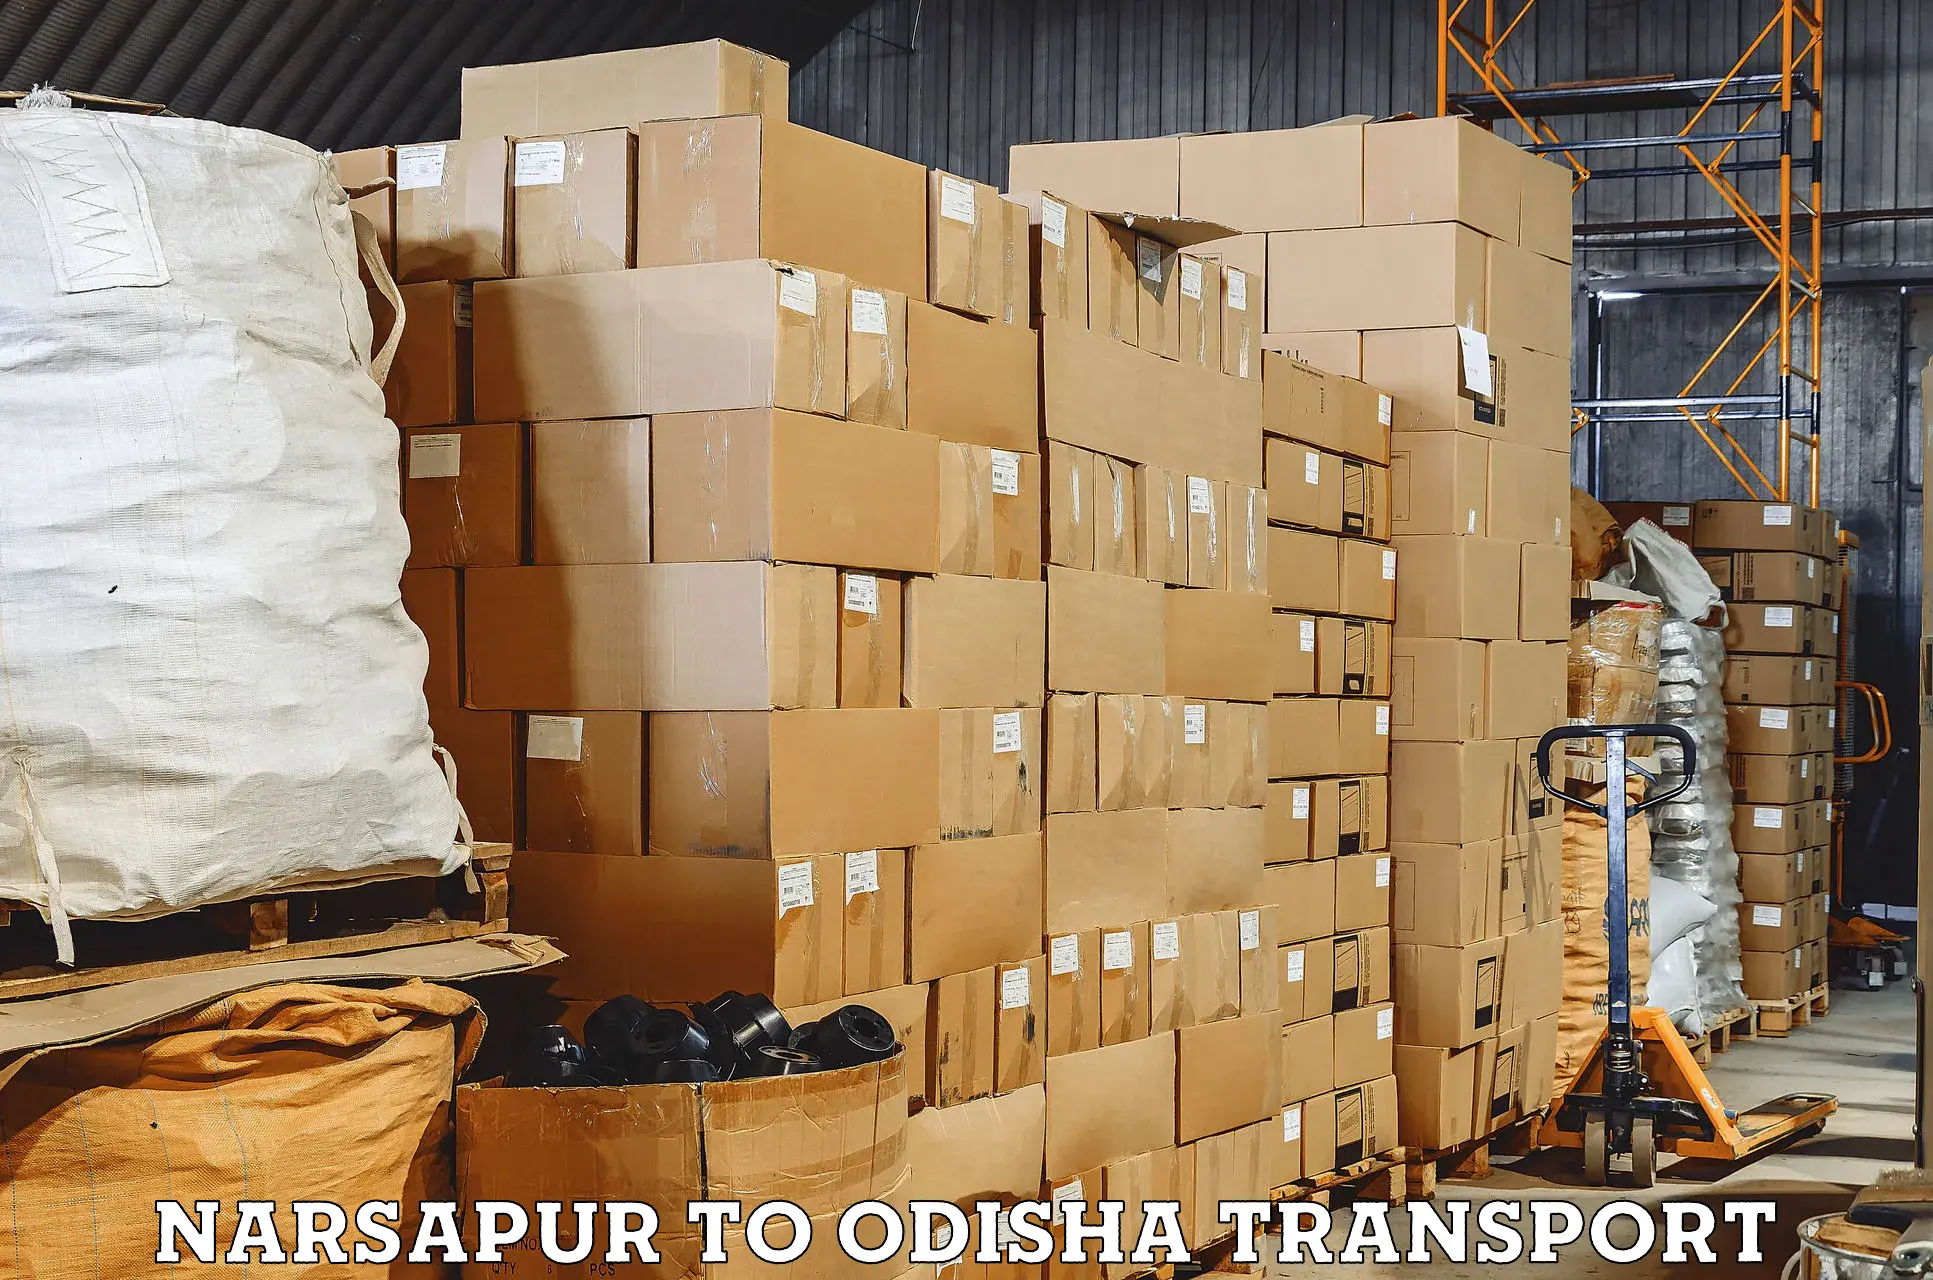 Part load transport service in India Narsapur to Mahakalapada